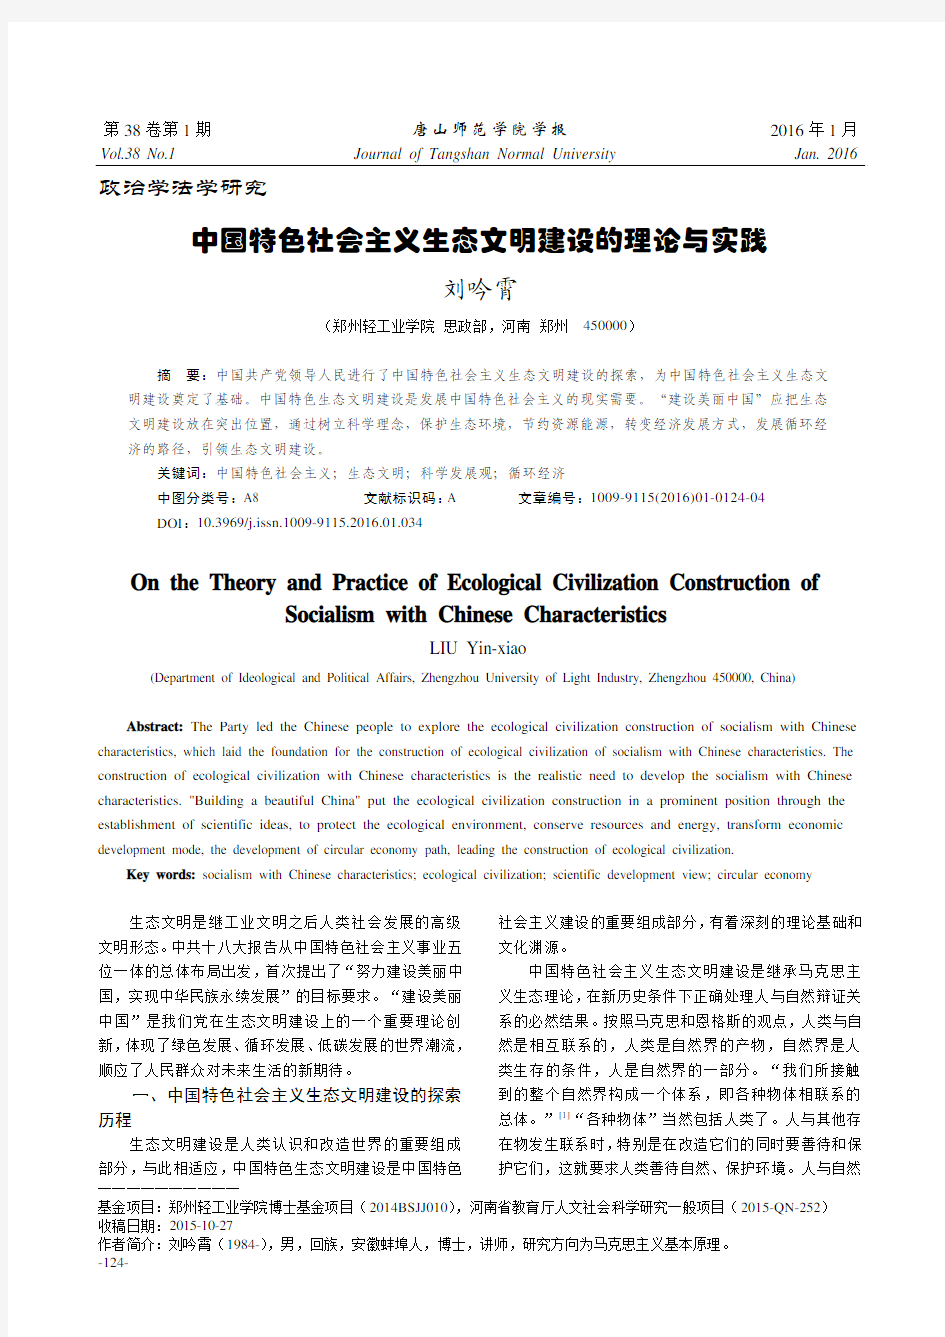 中国特色社会主义生态文明建设的理论与实践